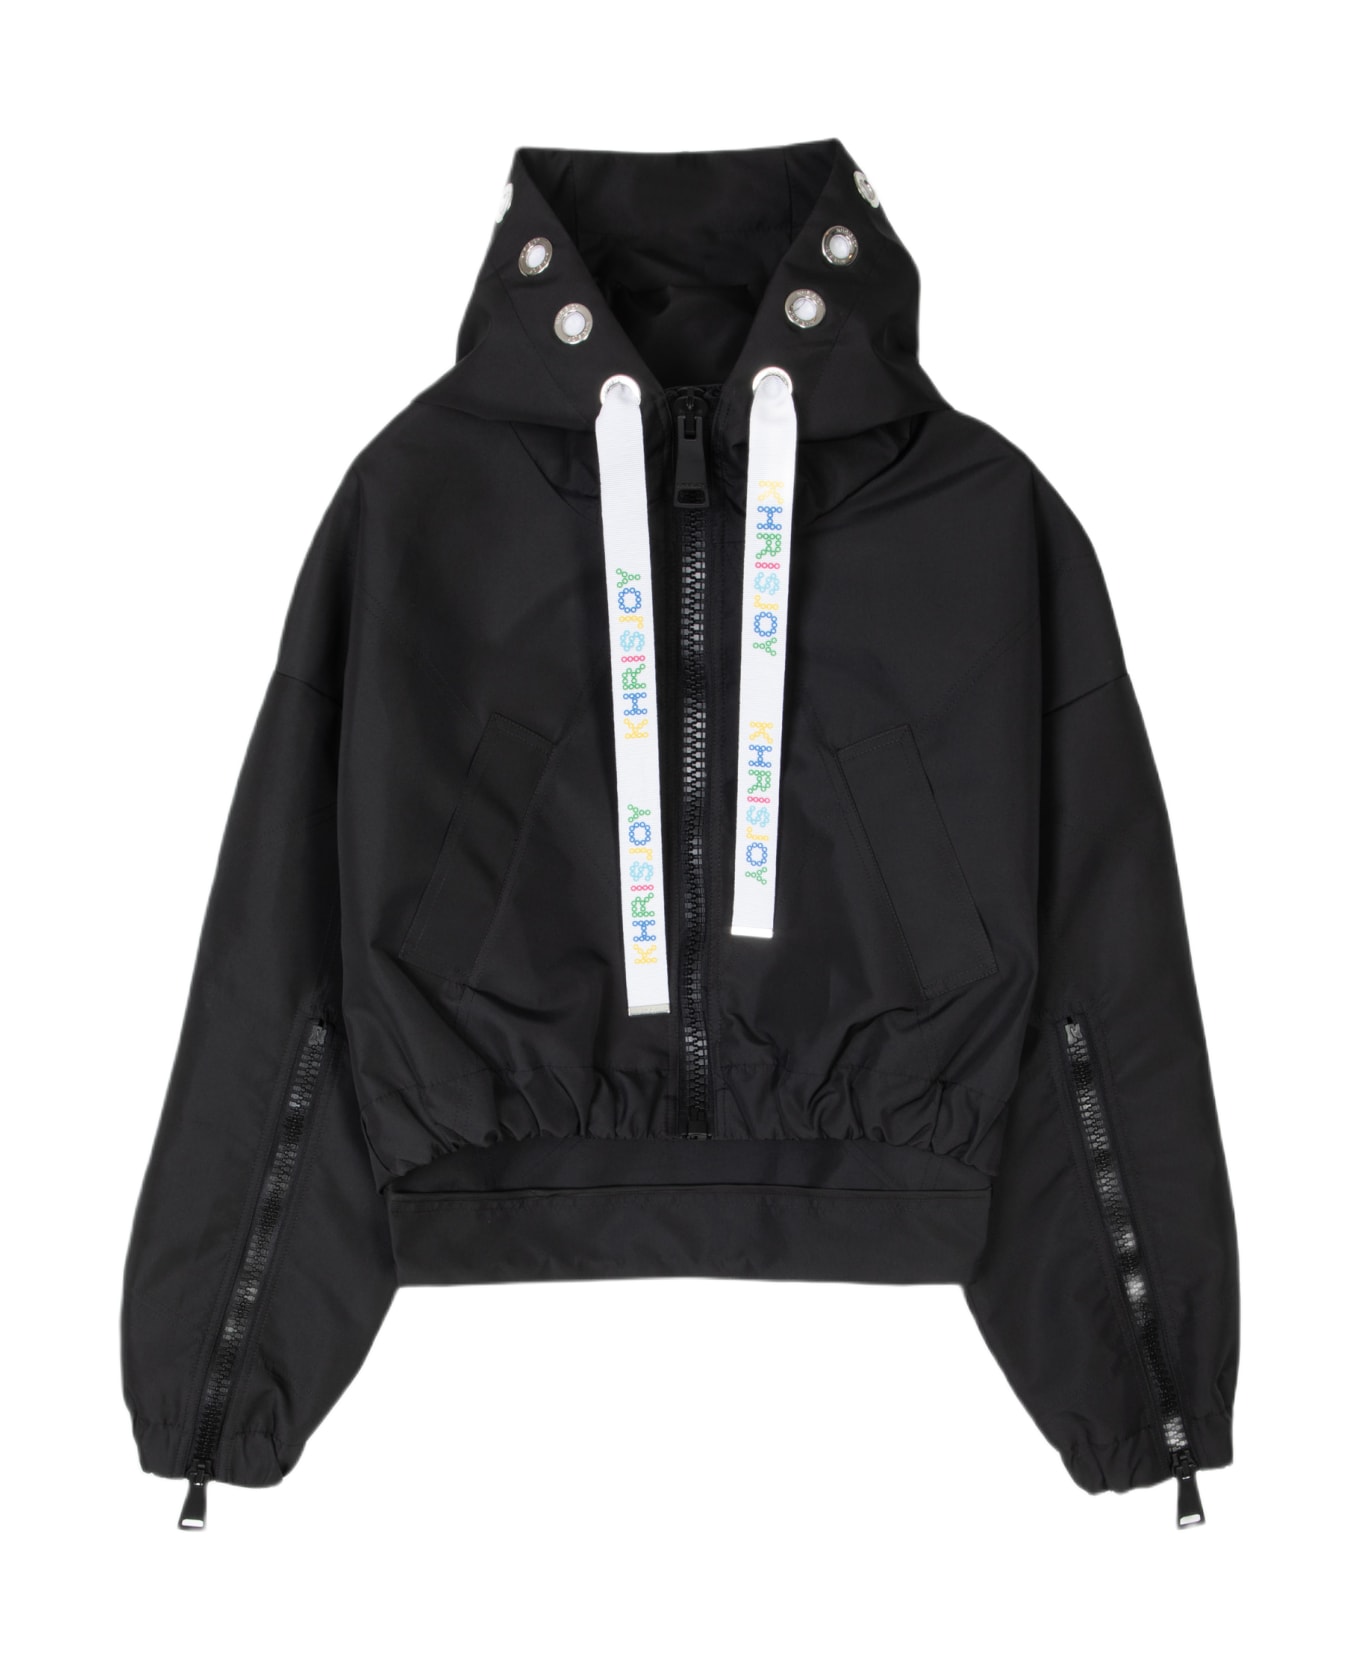 Khrisjoy New Khris Crop Windbreaker Black nylon hooded windproof jacket - New Khris Crop Windbreaker - Nero